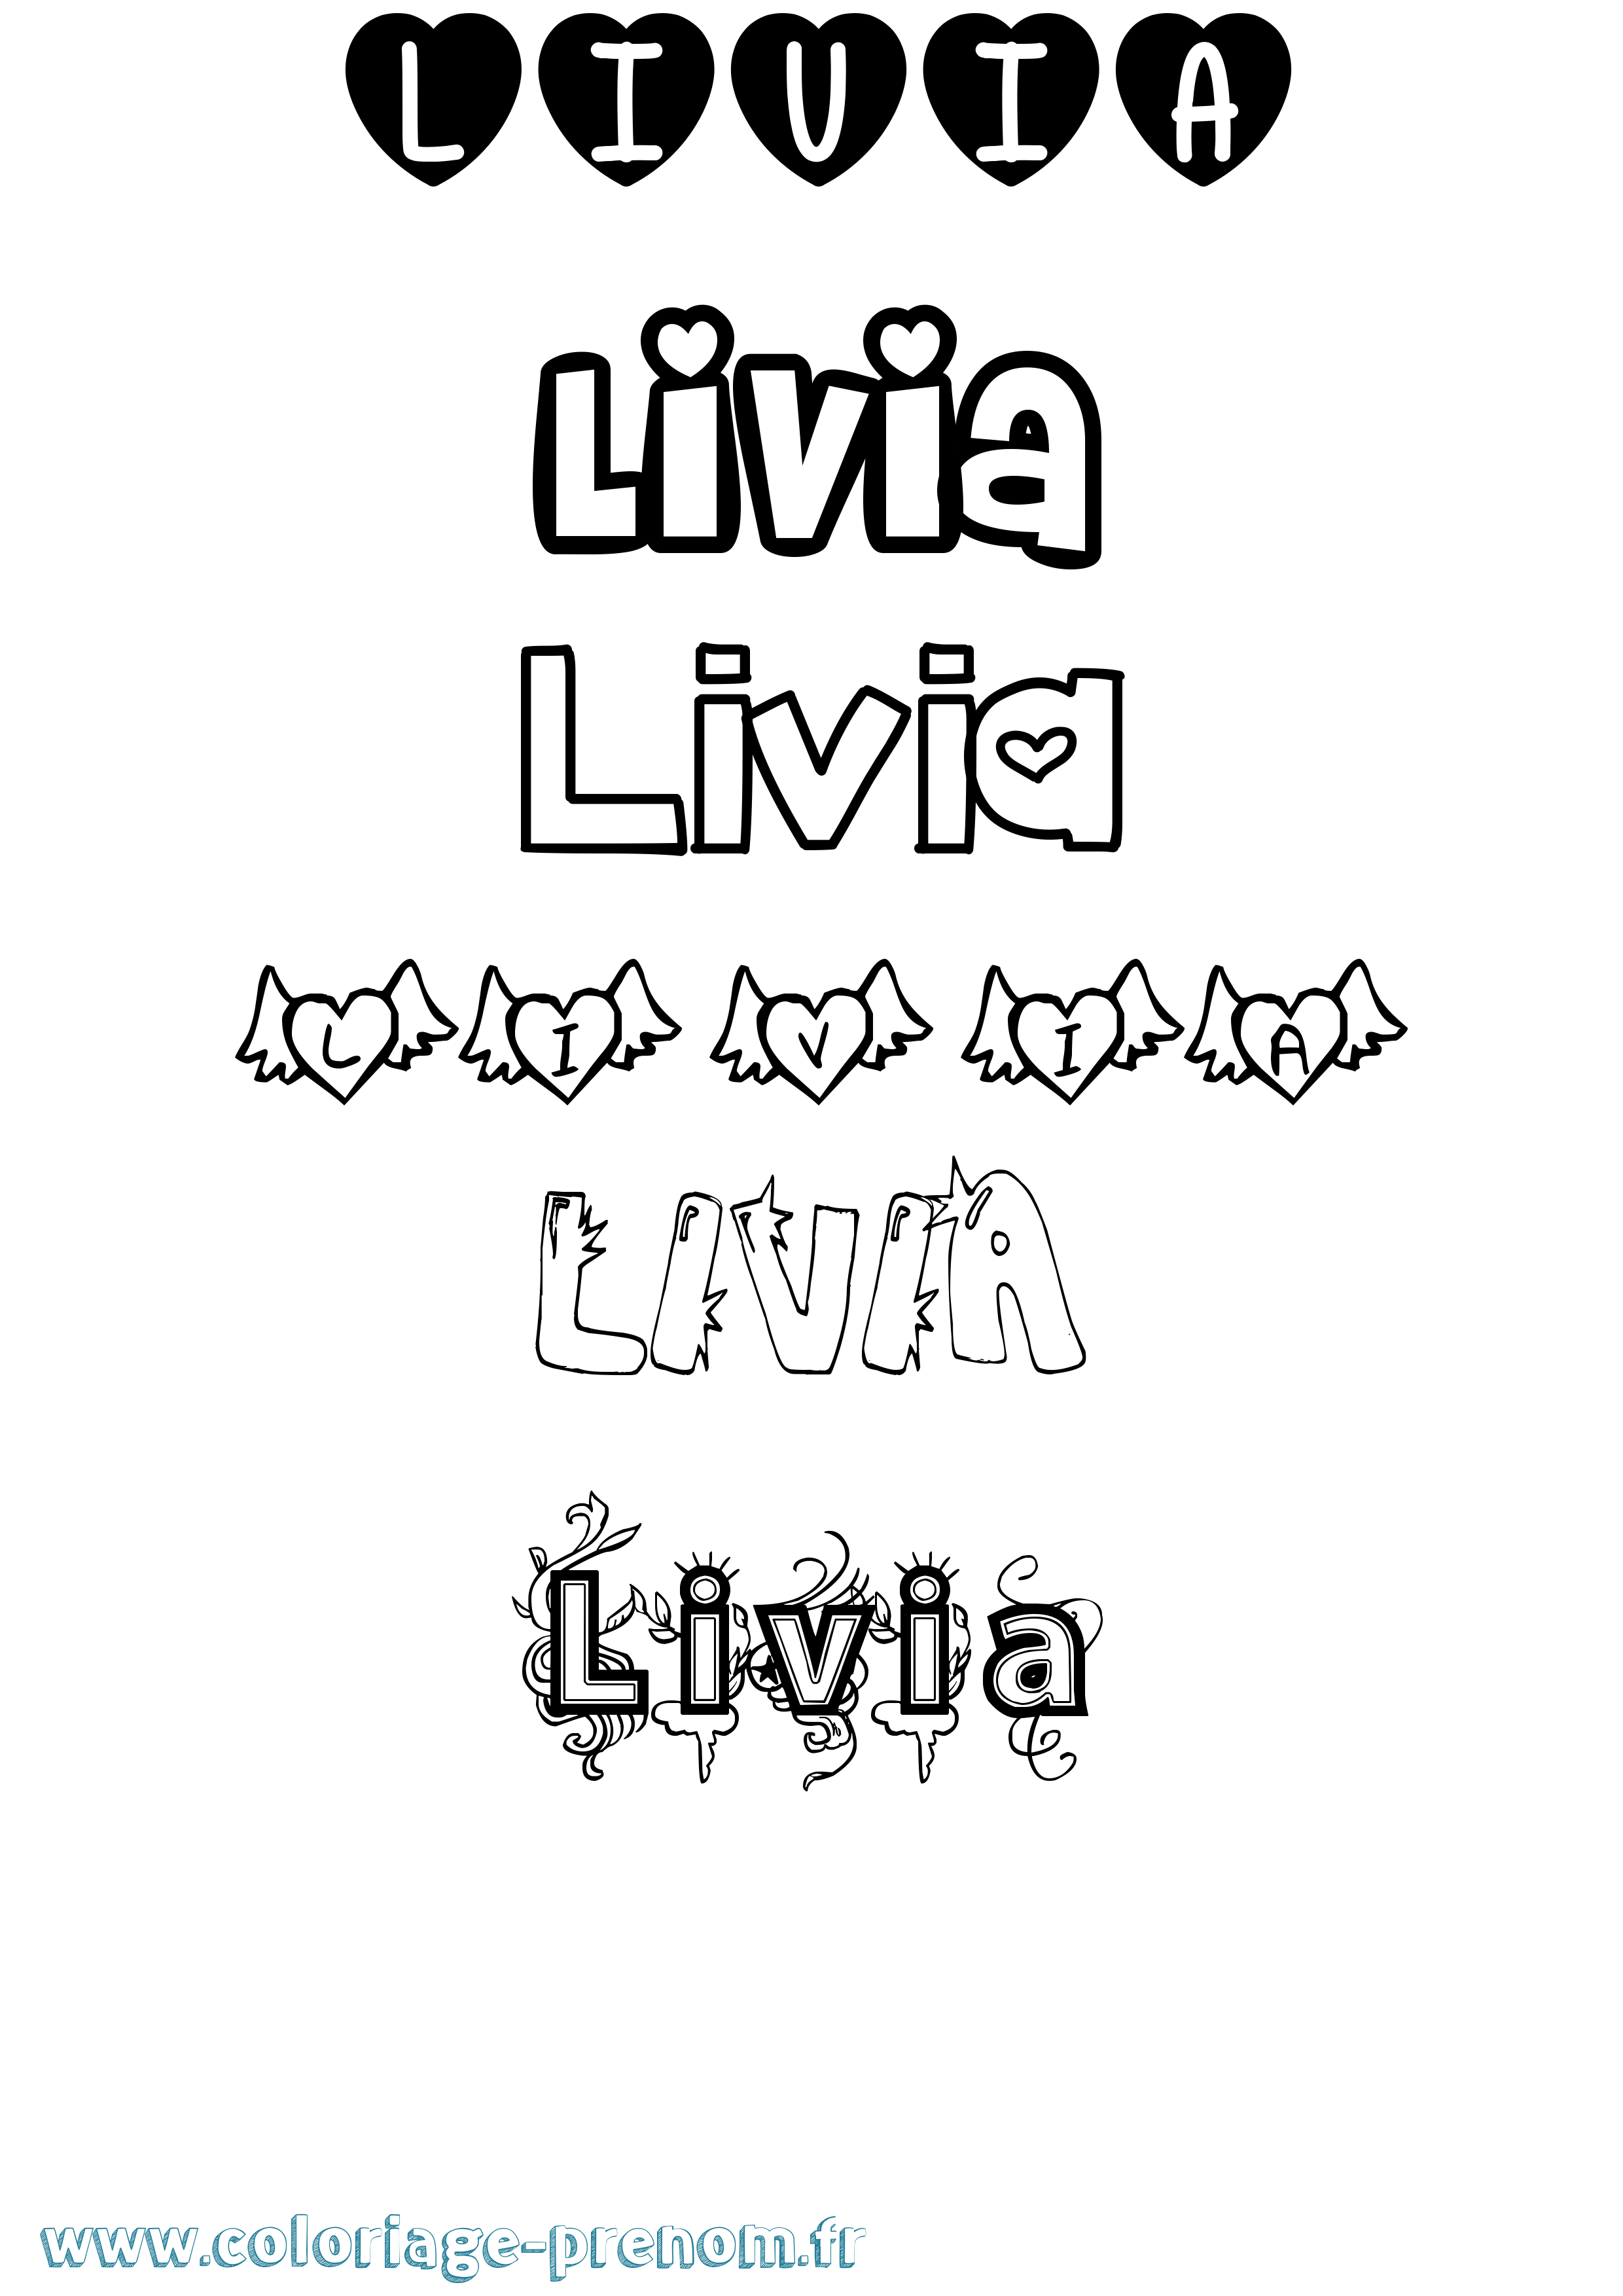 Coloriage prénom Livia